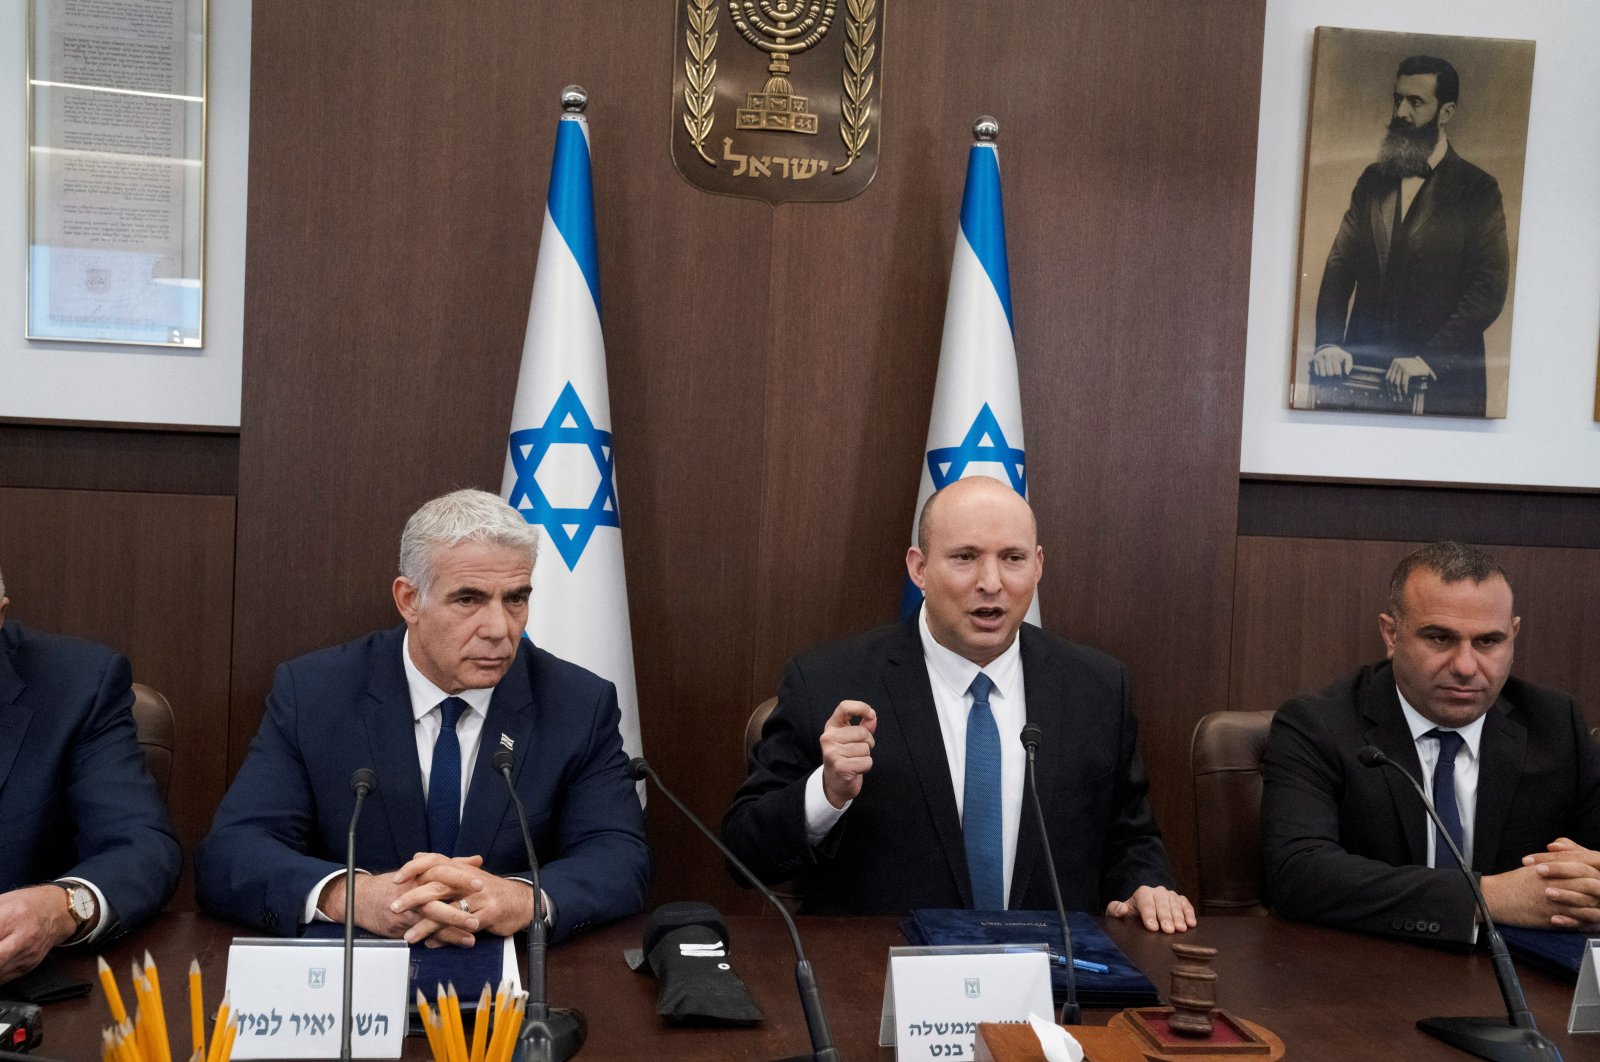 Koalisi penguasa Israel di ambang kehancuran setelah anggota parlemen mundur